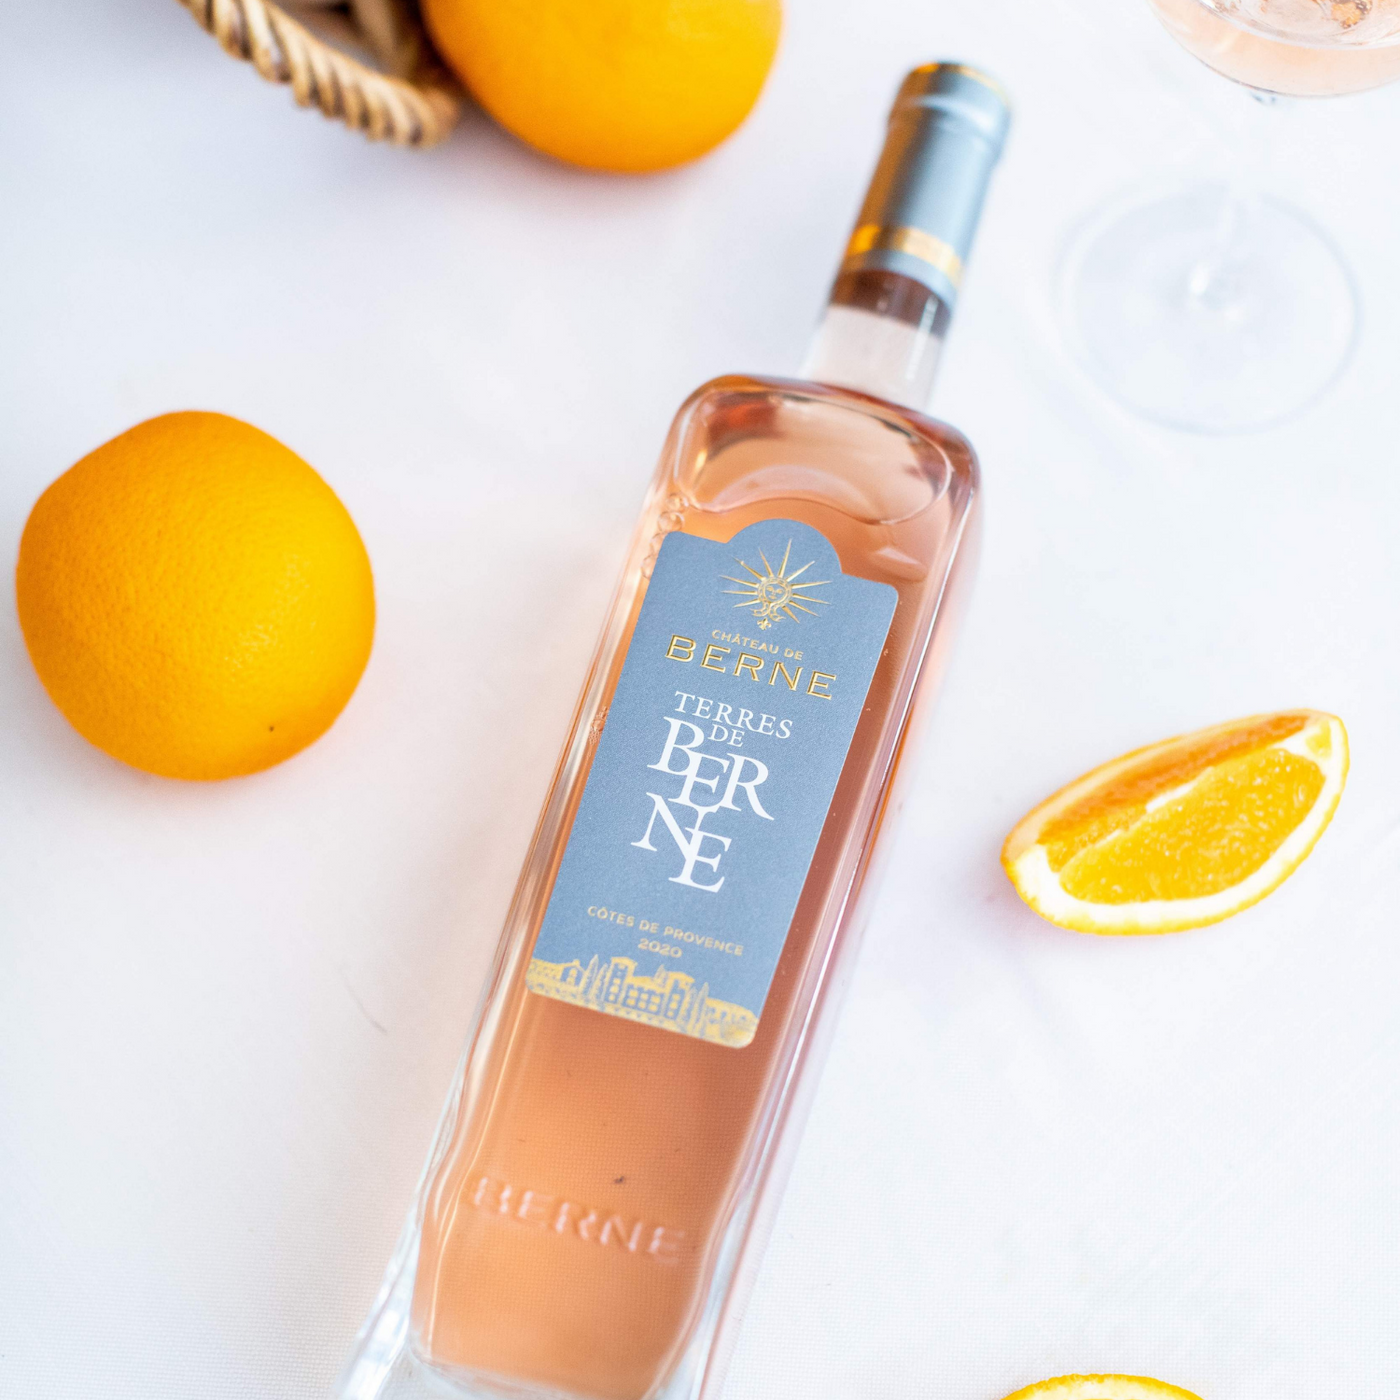 Vin Rosé 2022 AOP Côtes de Provence MATHUSALEM - Terres de Berne